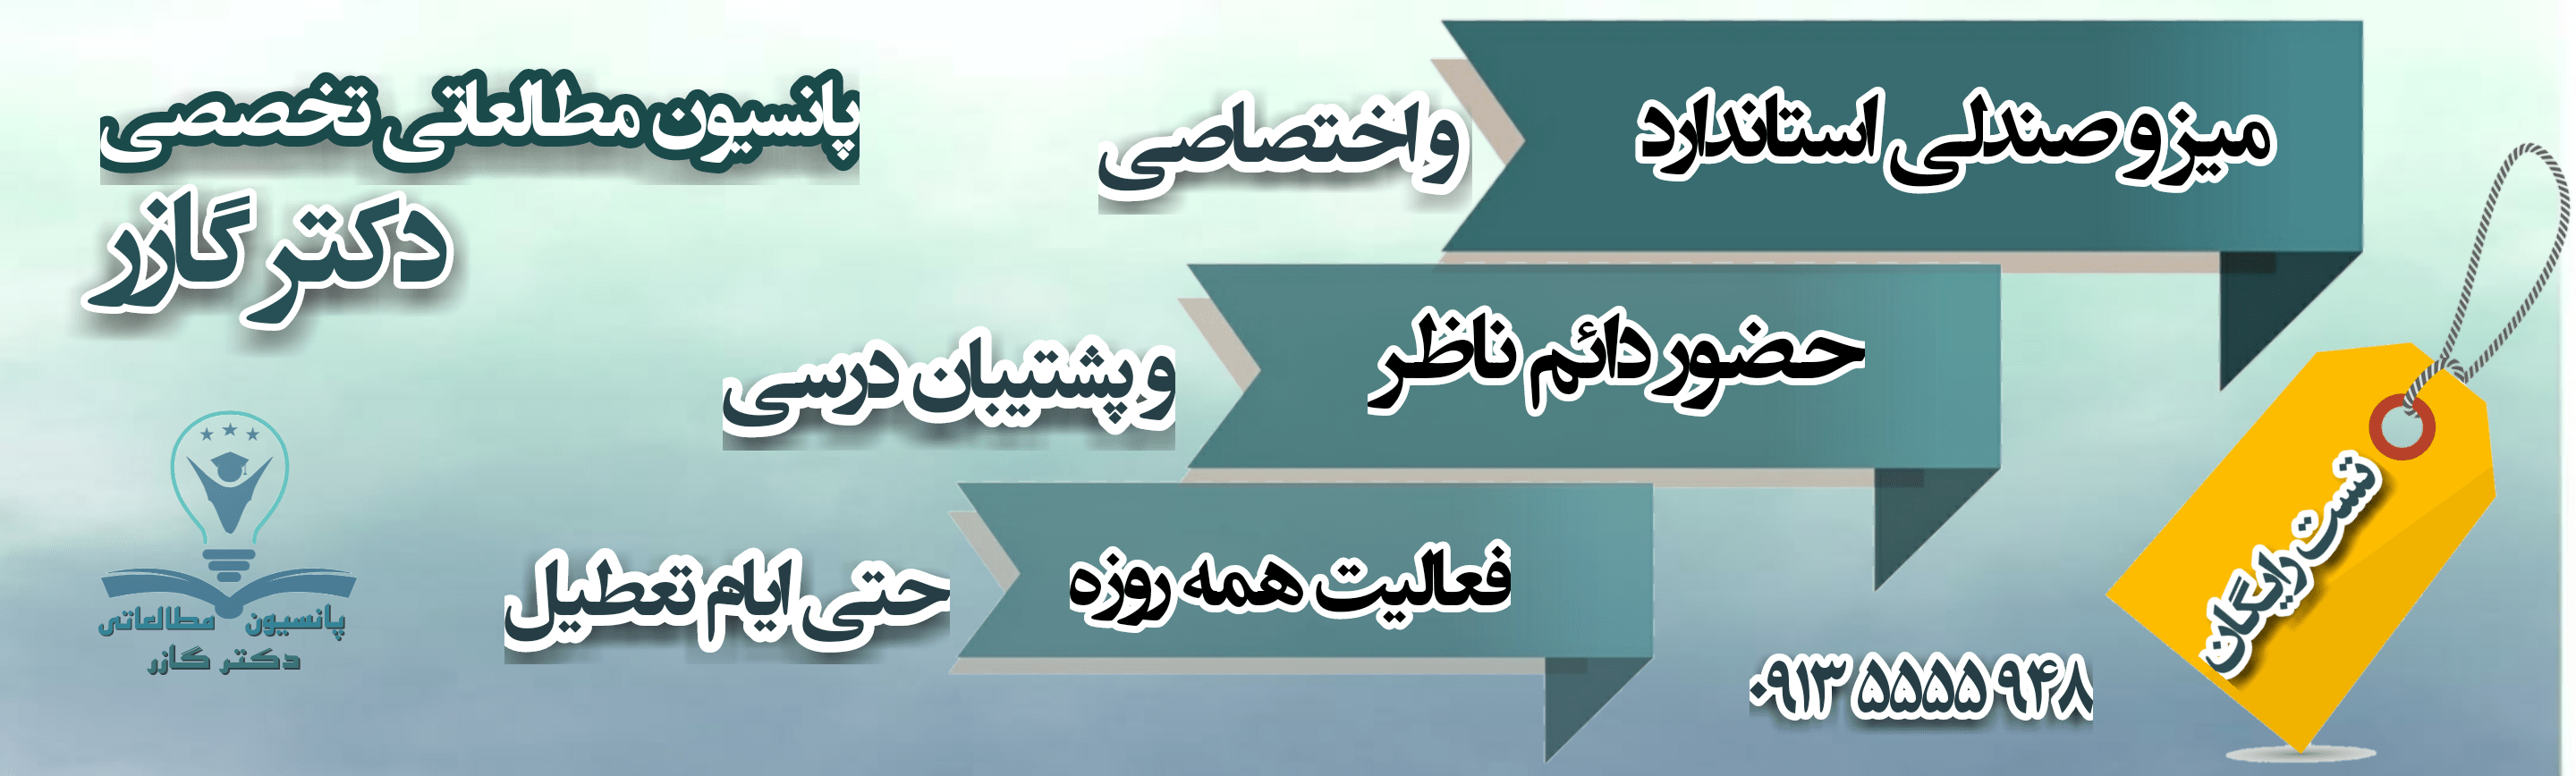 پانسیون مطالعاتی حضوری اصفهان